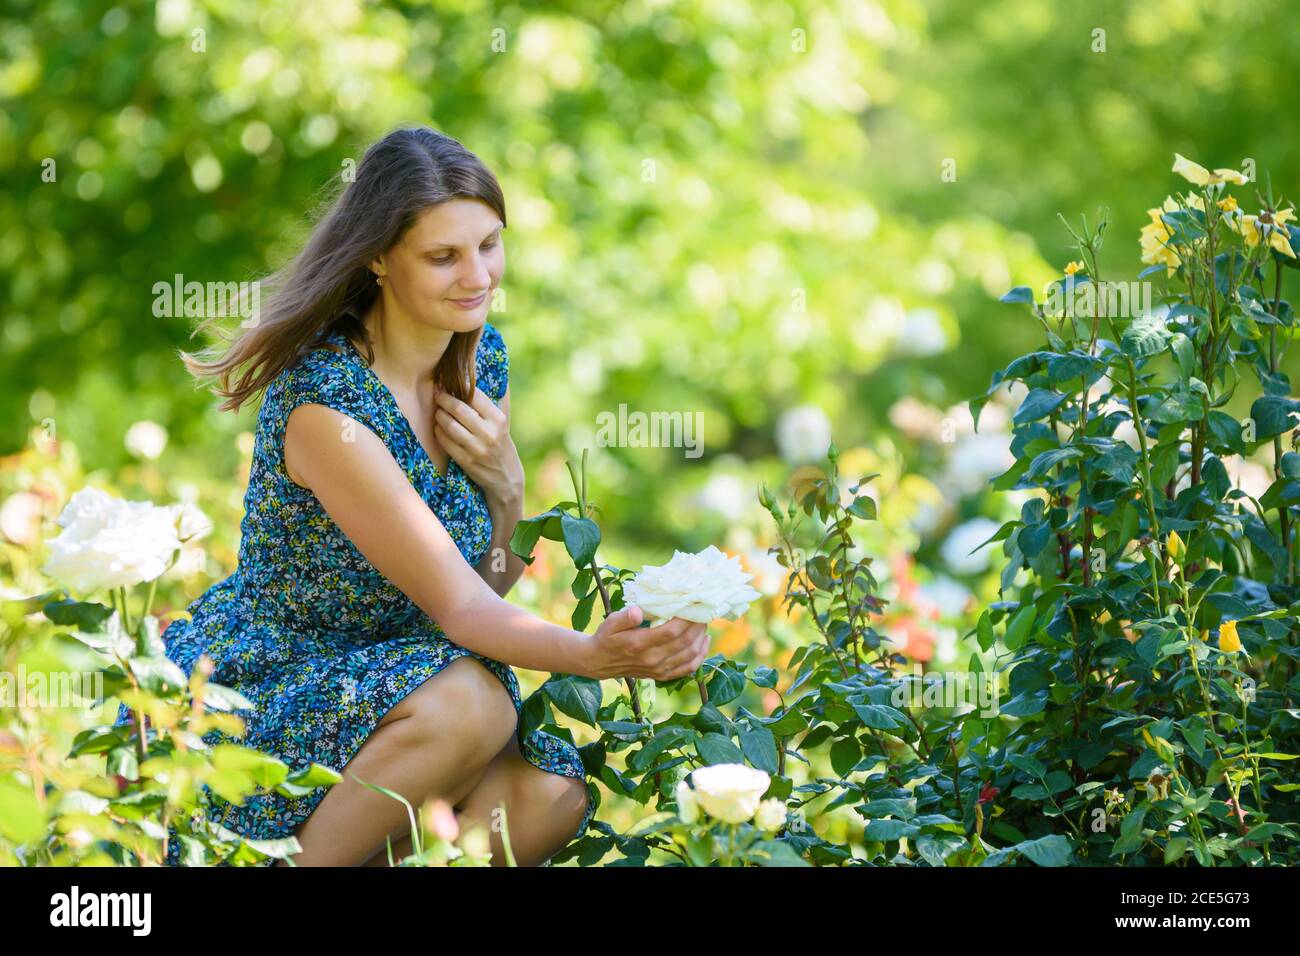 Girl in green garden admires white rose on bush Stock Photo